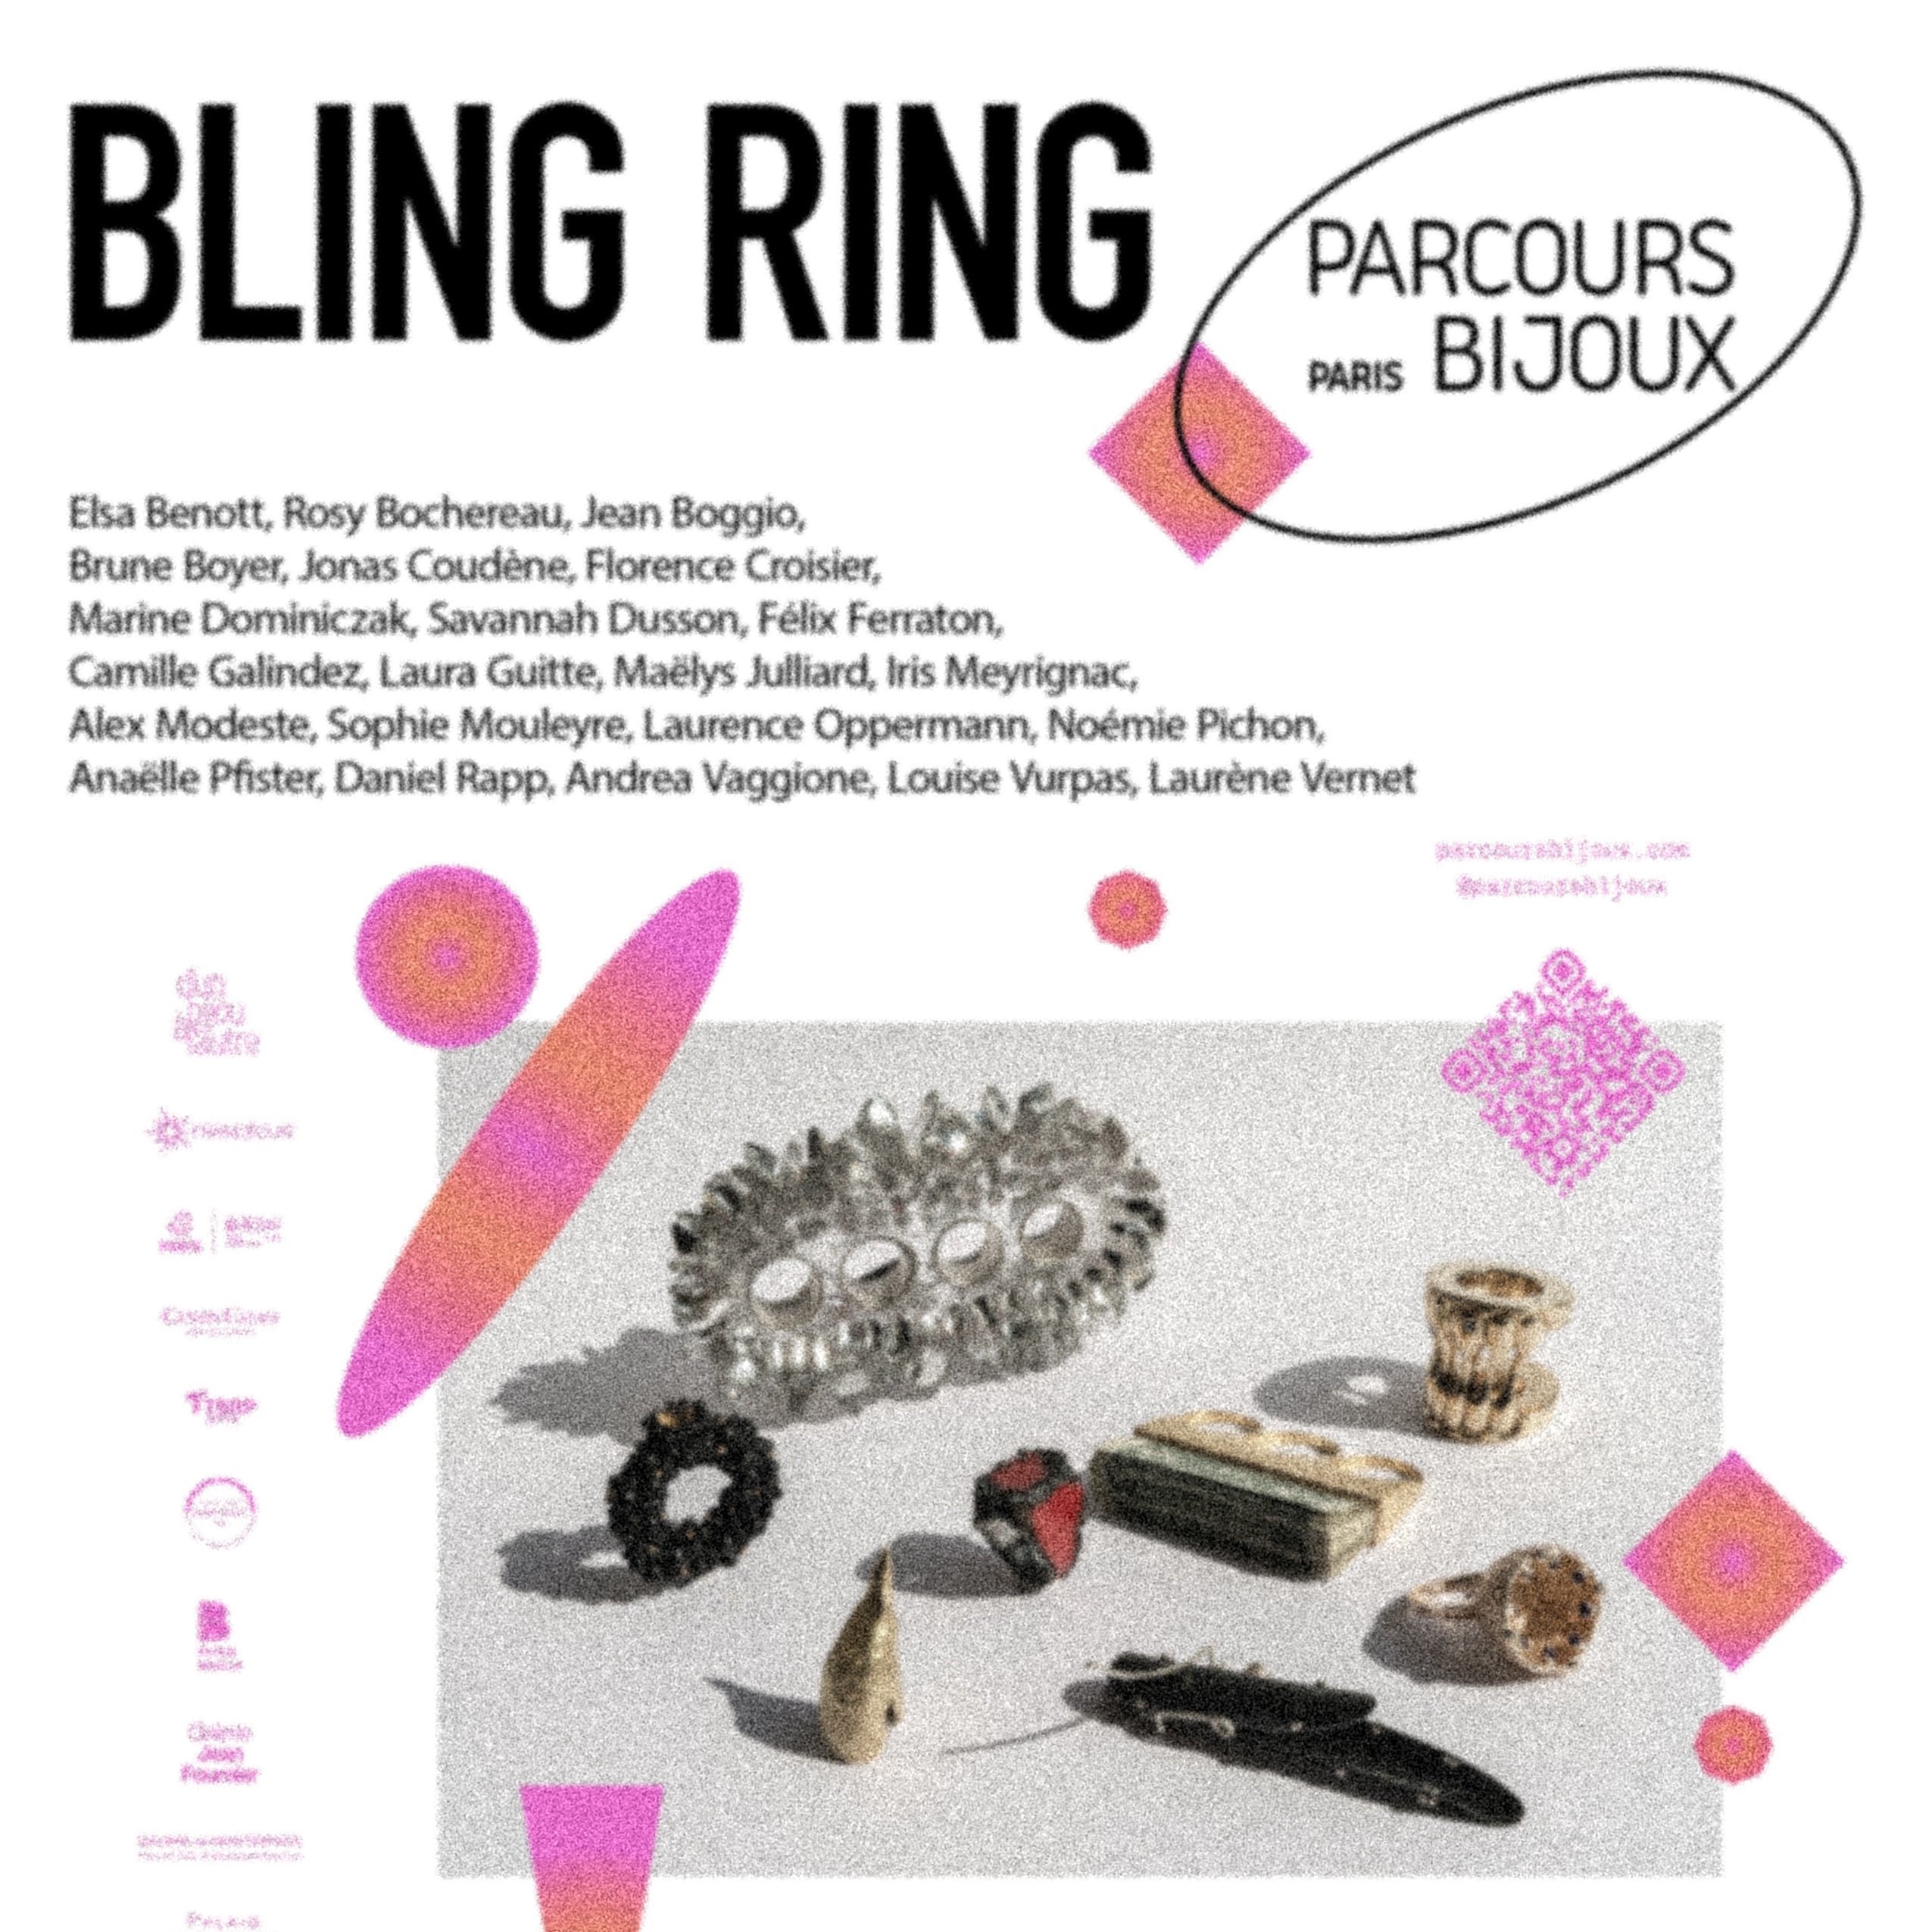 Affiche de l'exposition Bling Ring à Paris, dans le cadre du Parcours Bijoux. On y voit une sélection de bijoux contemporains, dont une bague fabriquée par la créatrice Louise Vurpas